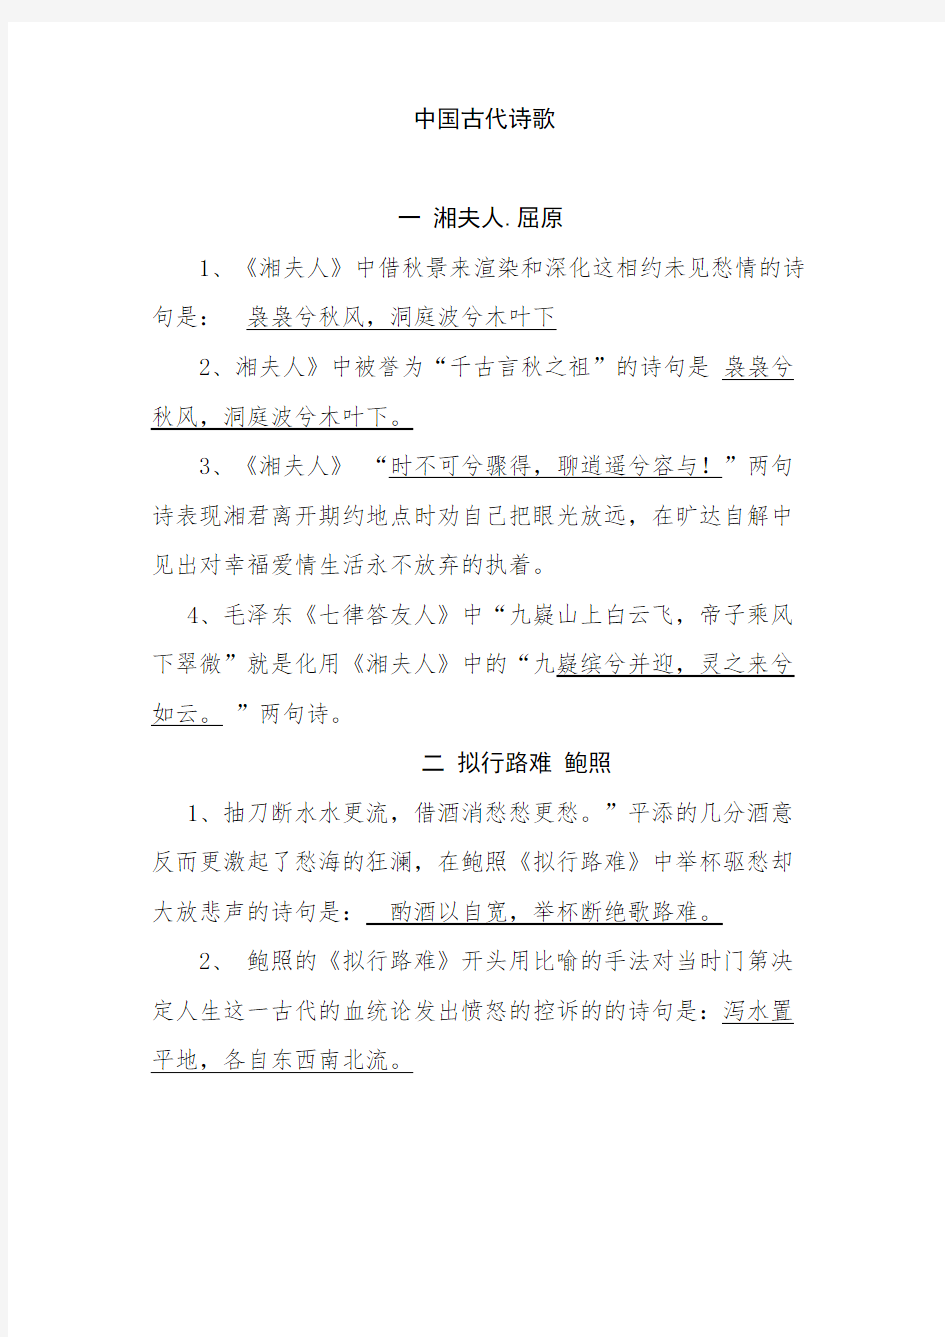 选修：中国古代诗歌散文欣赏(情景式默写)所有要求背诵的篇目34317教程文件